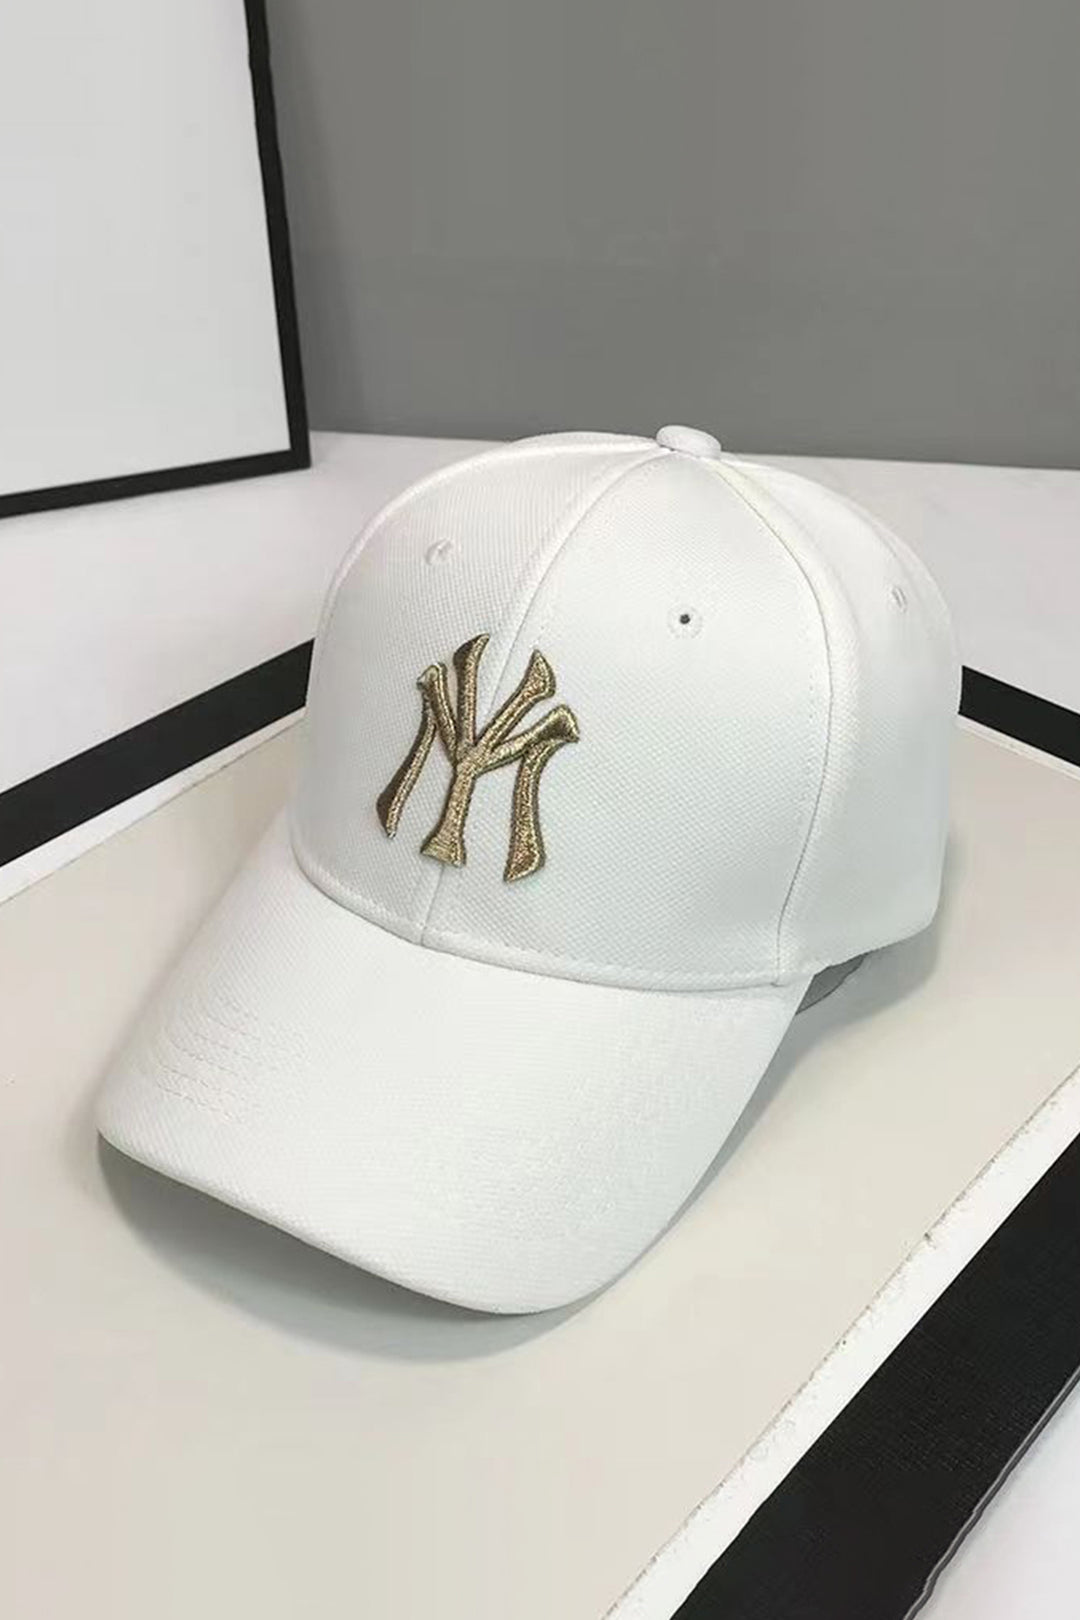 NY Classic White Baseball Cap - S23 - MCP081R